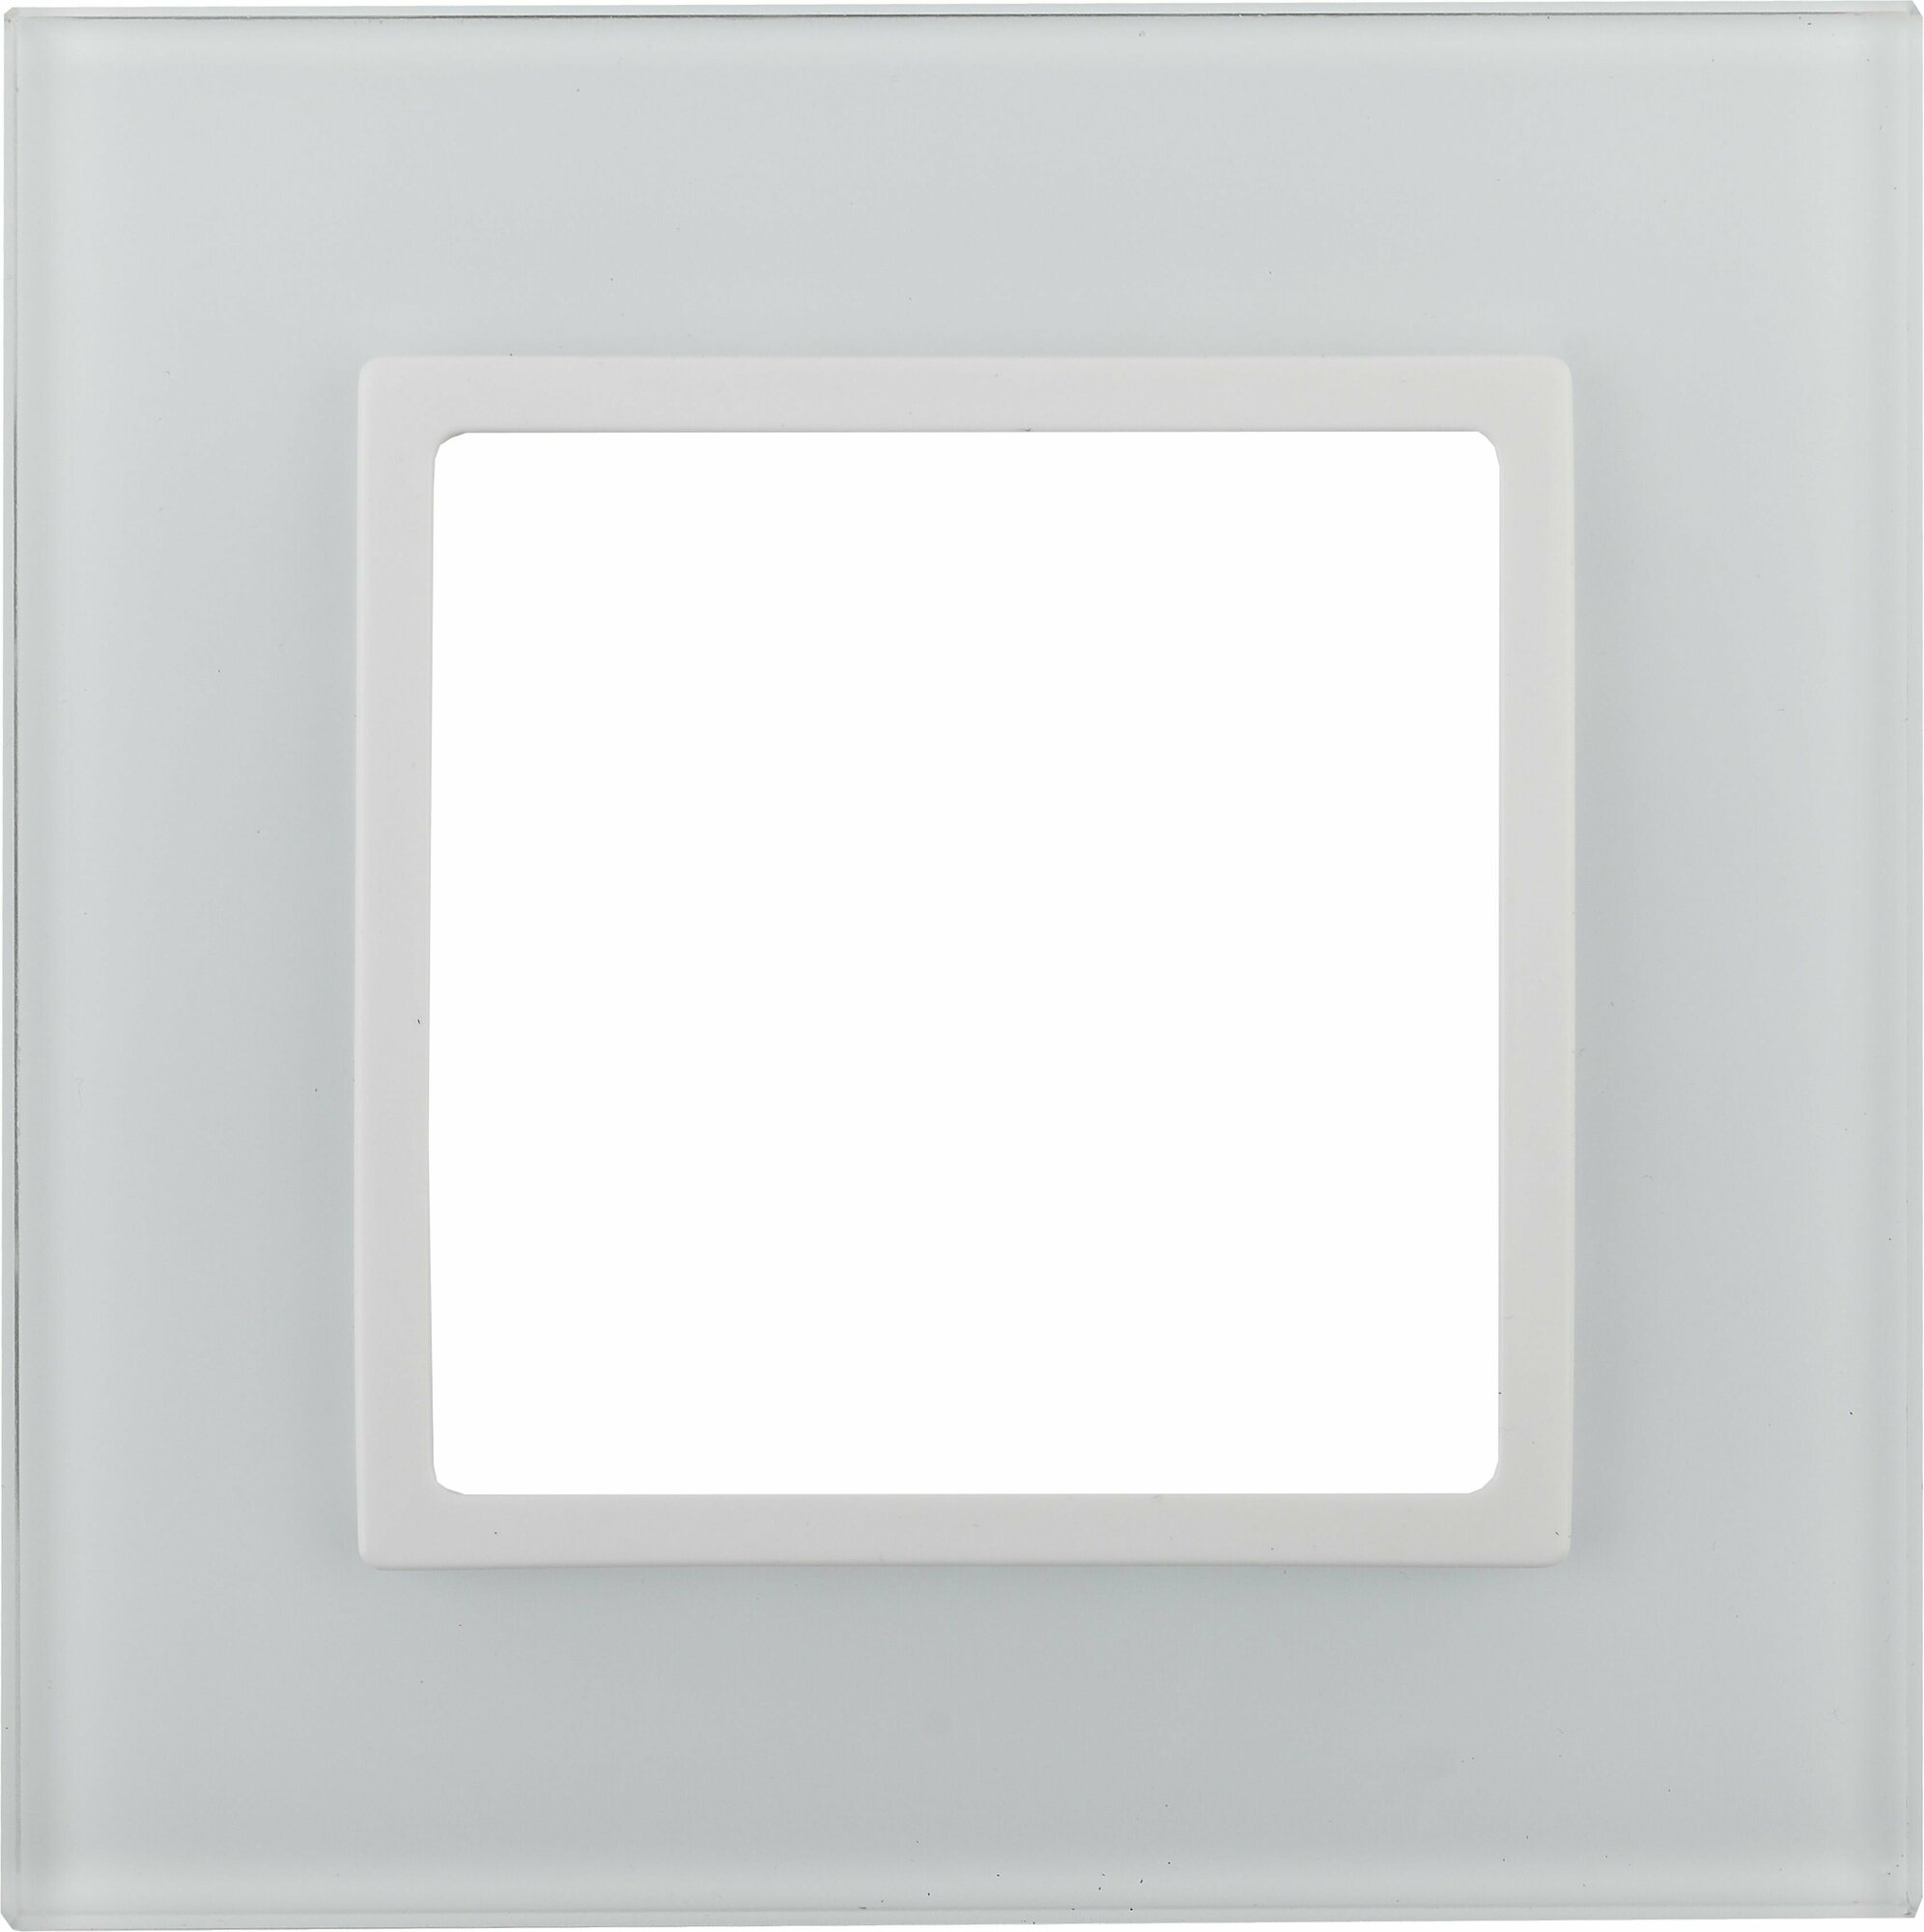 Рамка для розеток и выключателей ЭРА Elegance 14-5101-01 на 1 пост, стекло, Эра